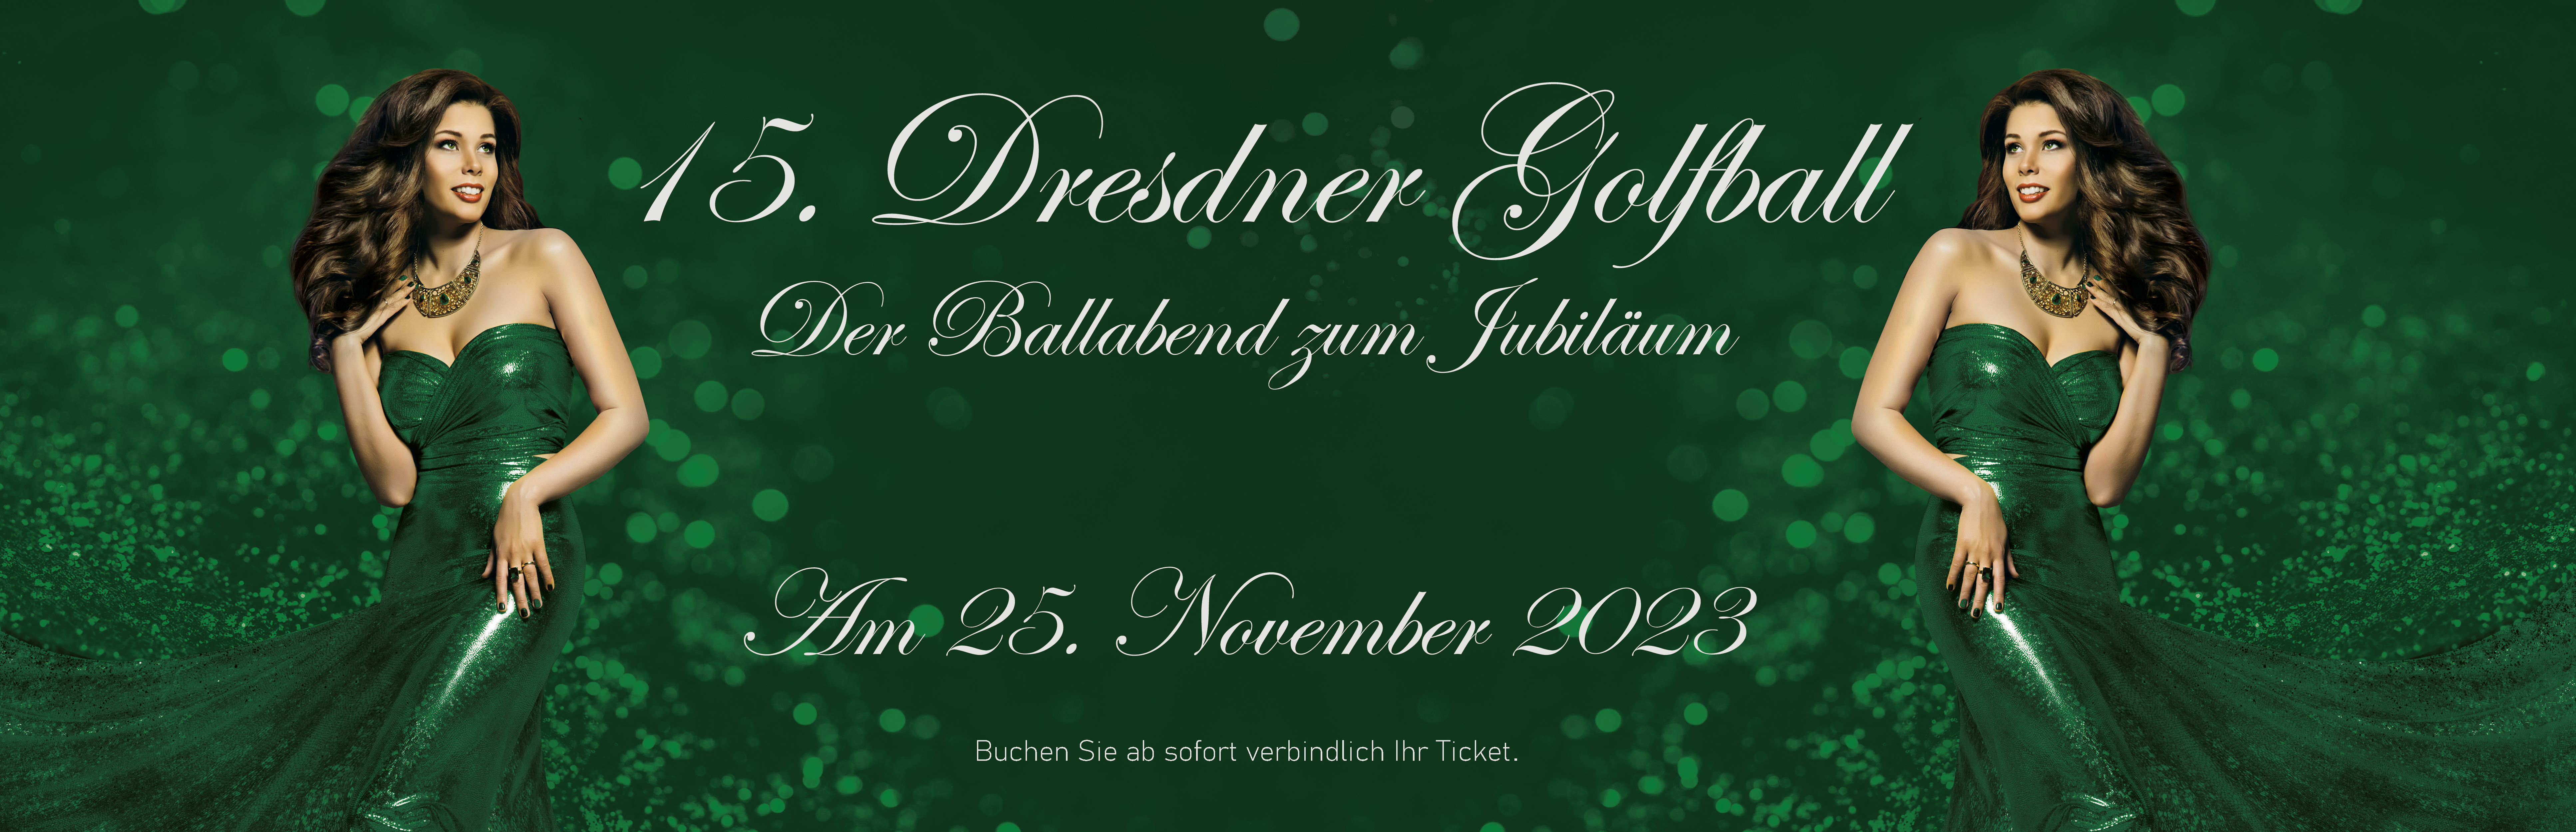 (c) Dresdner-golfball.de